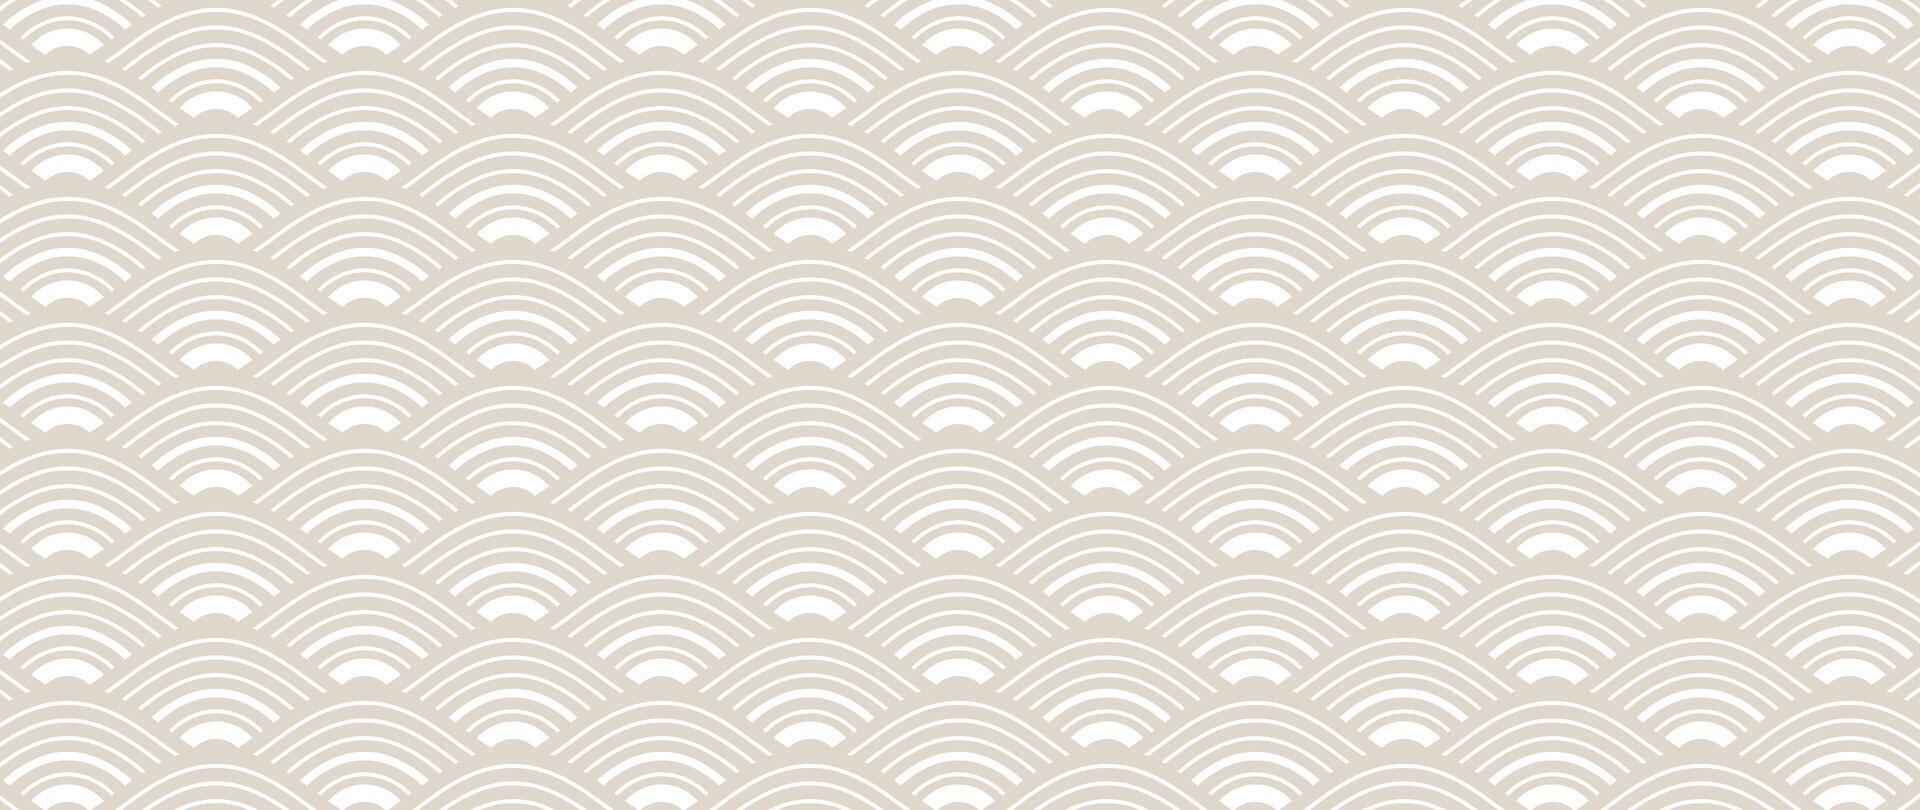 Japonais beige vague Contexte vecteur. fond d'écran conception avec beige et blanc océan vague modèle toile de fond. moderne luxe Oriental illustration pour couverture, bannière, site Internet, décor, frontière. vecteur